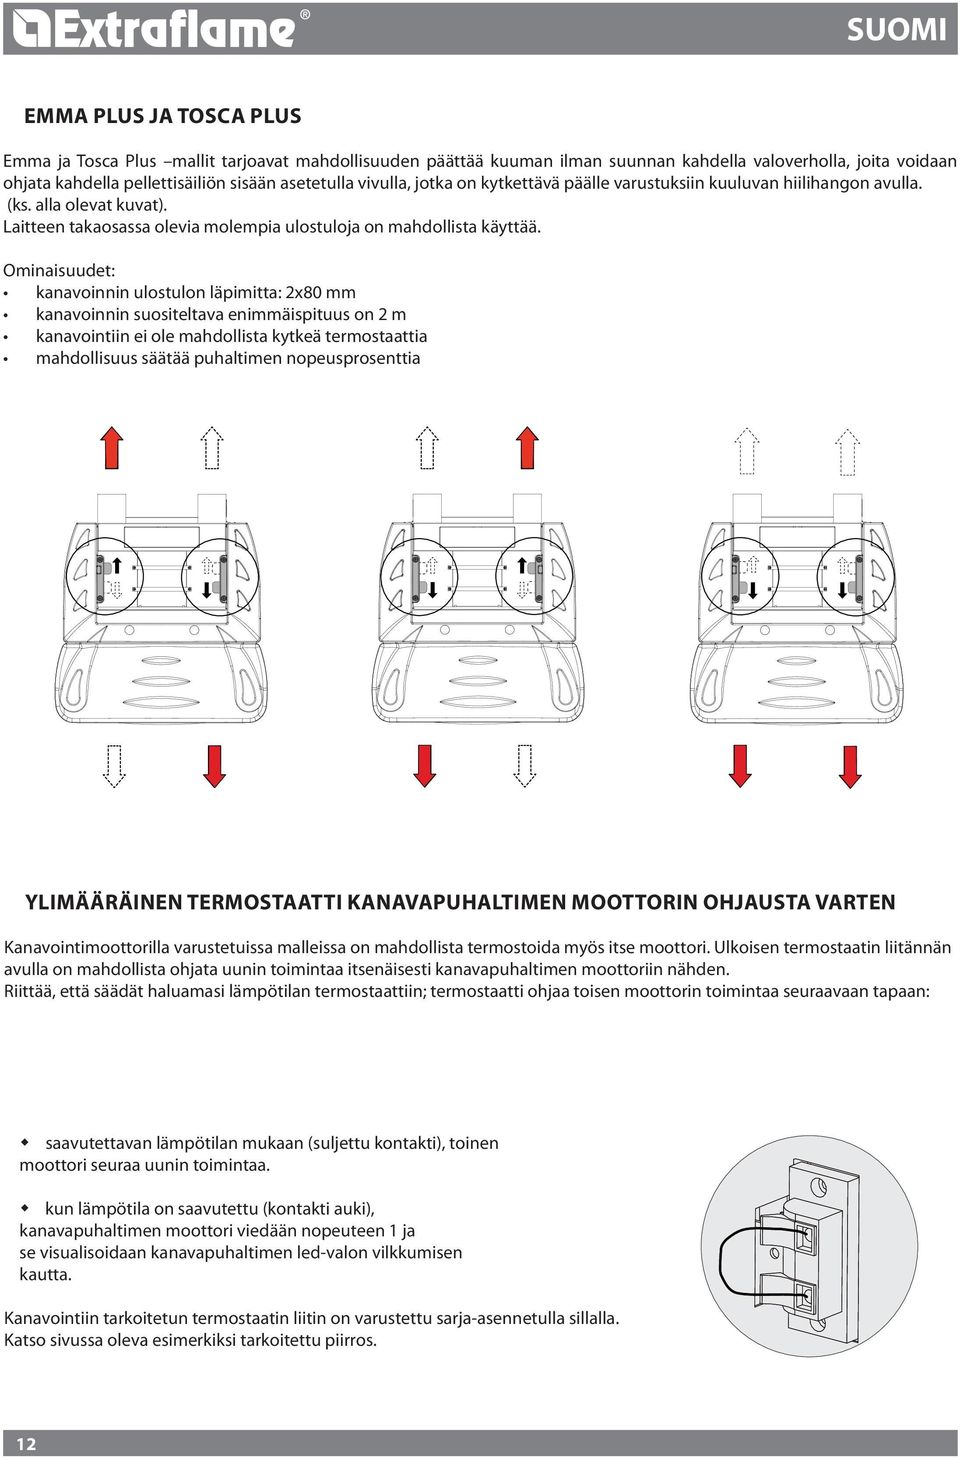 Ominaisuudet: kanavoinnin ulostulon läpimitta: x80 mm kanavoinnin suositeltava enimmäispituus on m kanavointiin ei ole mahdollista kytkeä termostaattia mahdollisuus säätää puhaltimen nopeusprosenttia